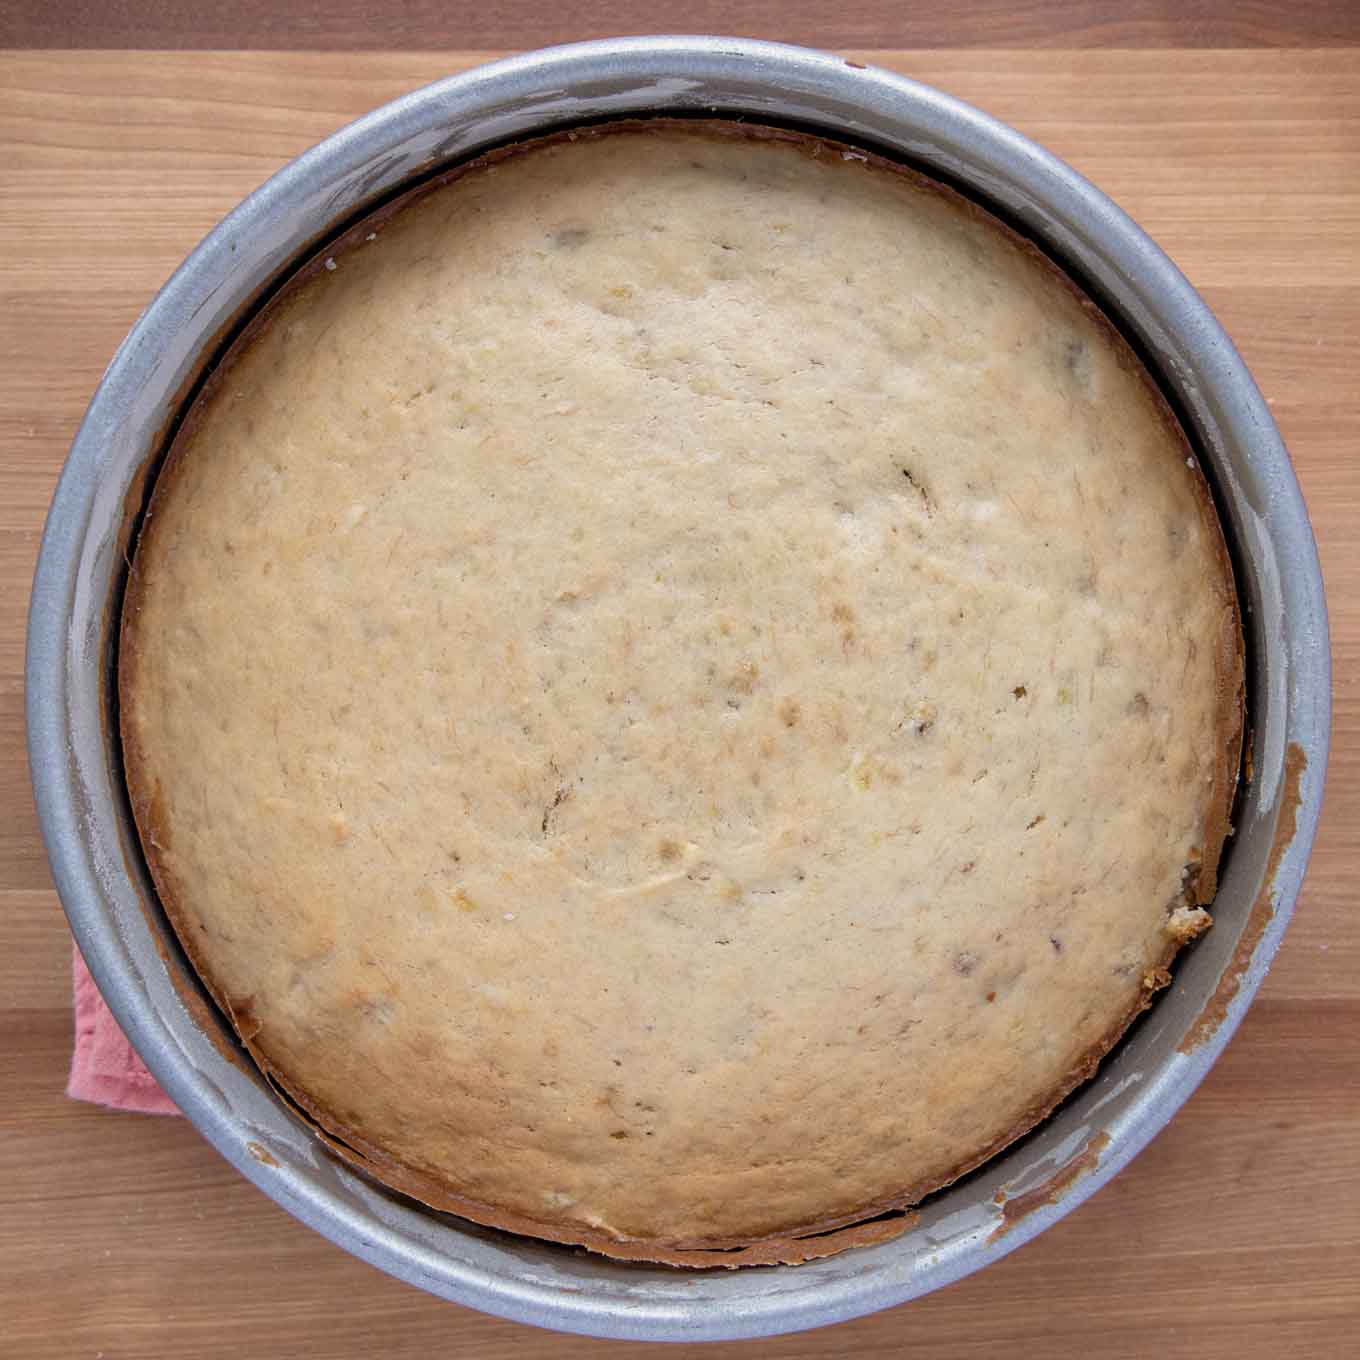 golden brown banana cake in cake pan